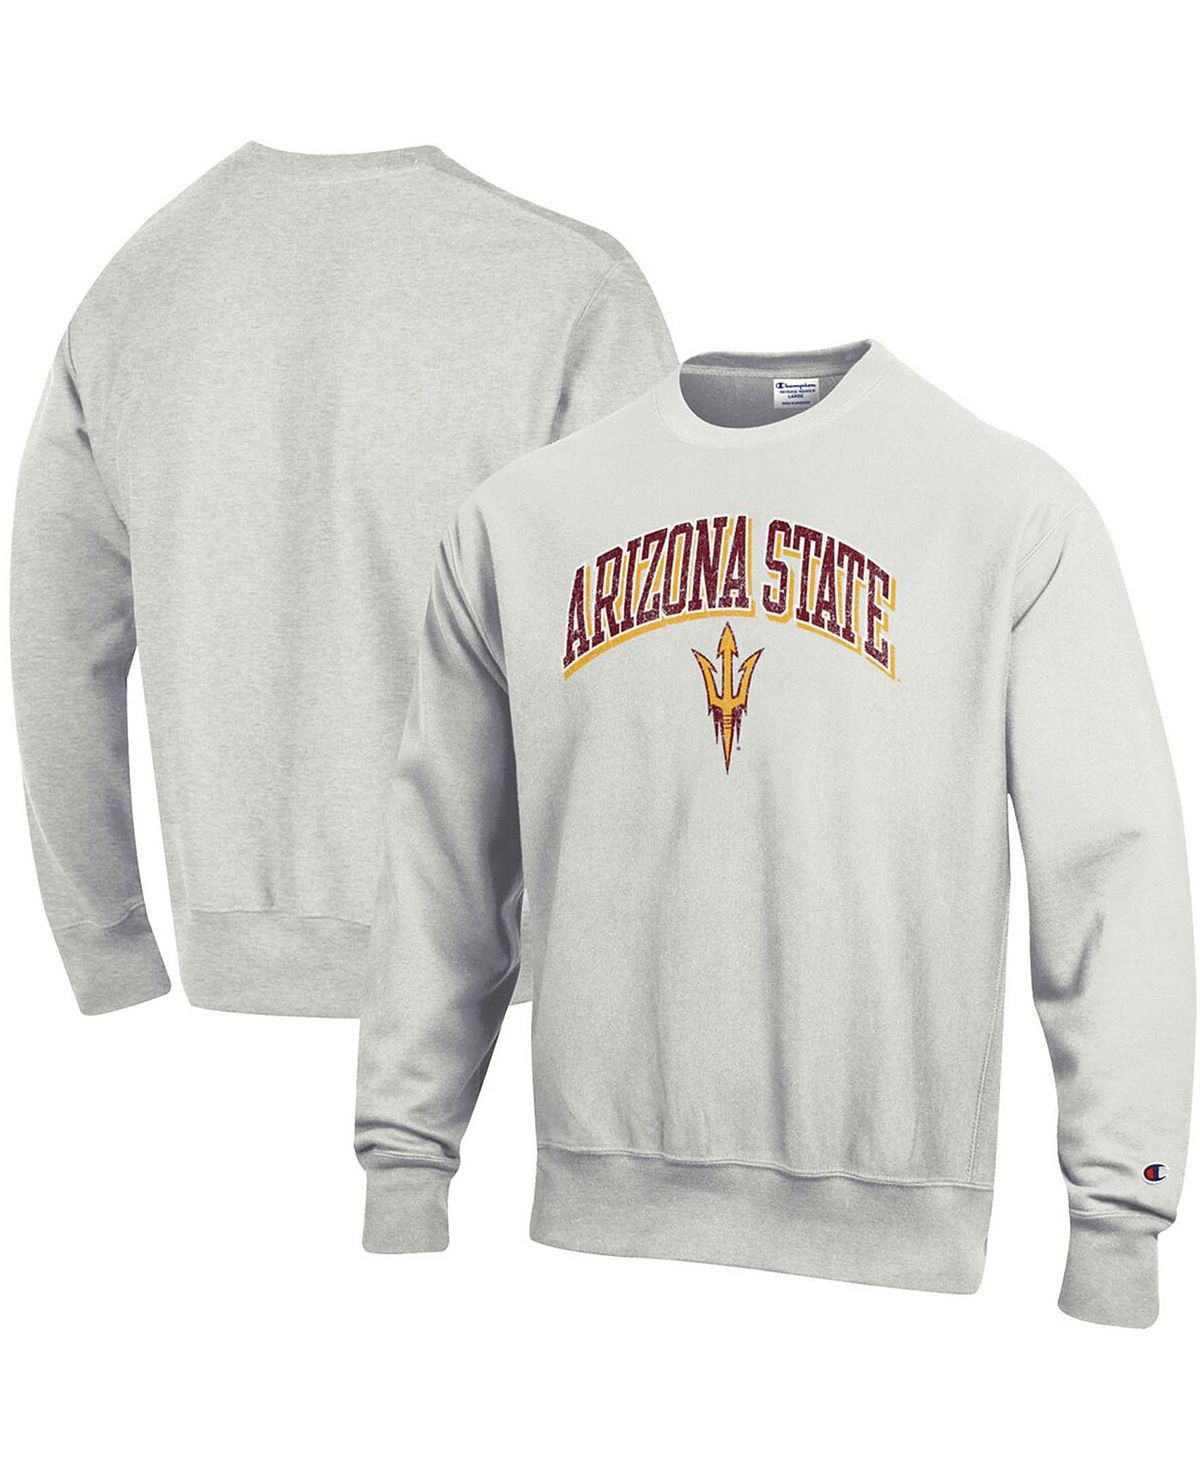 Мужской серый пуловер с логотипом Arizona State Sun Devils Arch Over Logo, толстовка с обратным плетением Champion